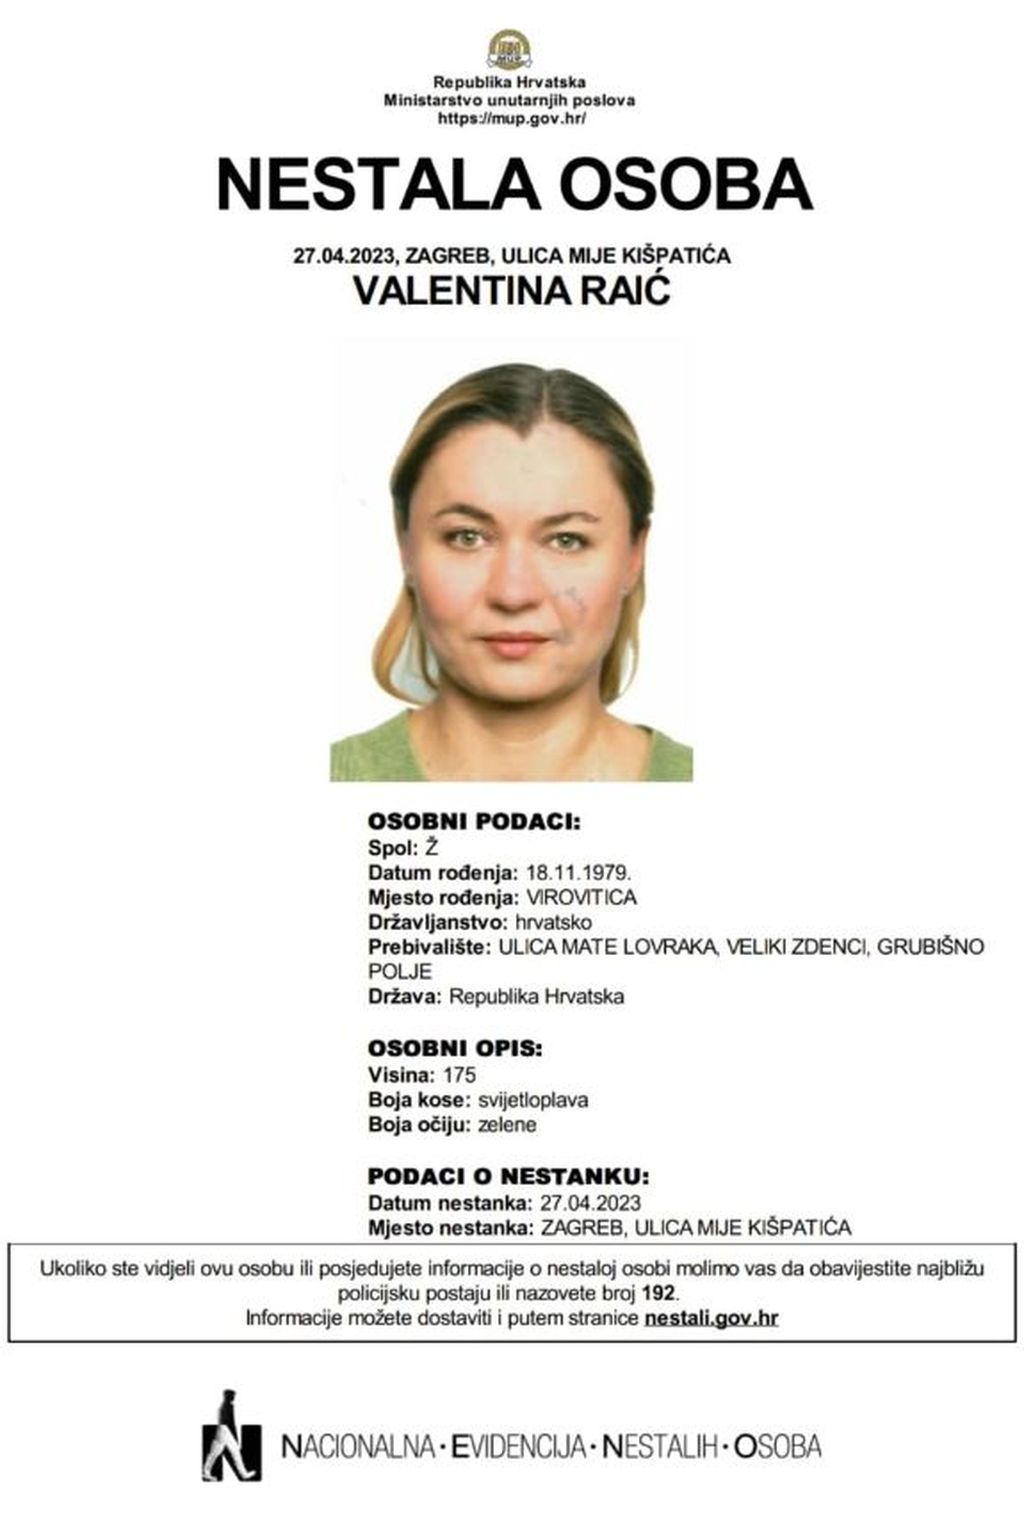 Valentina Raić